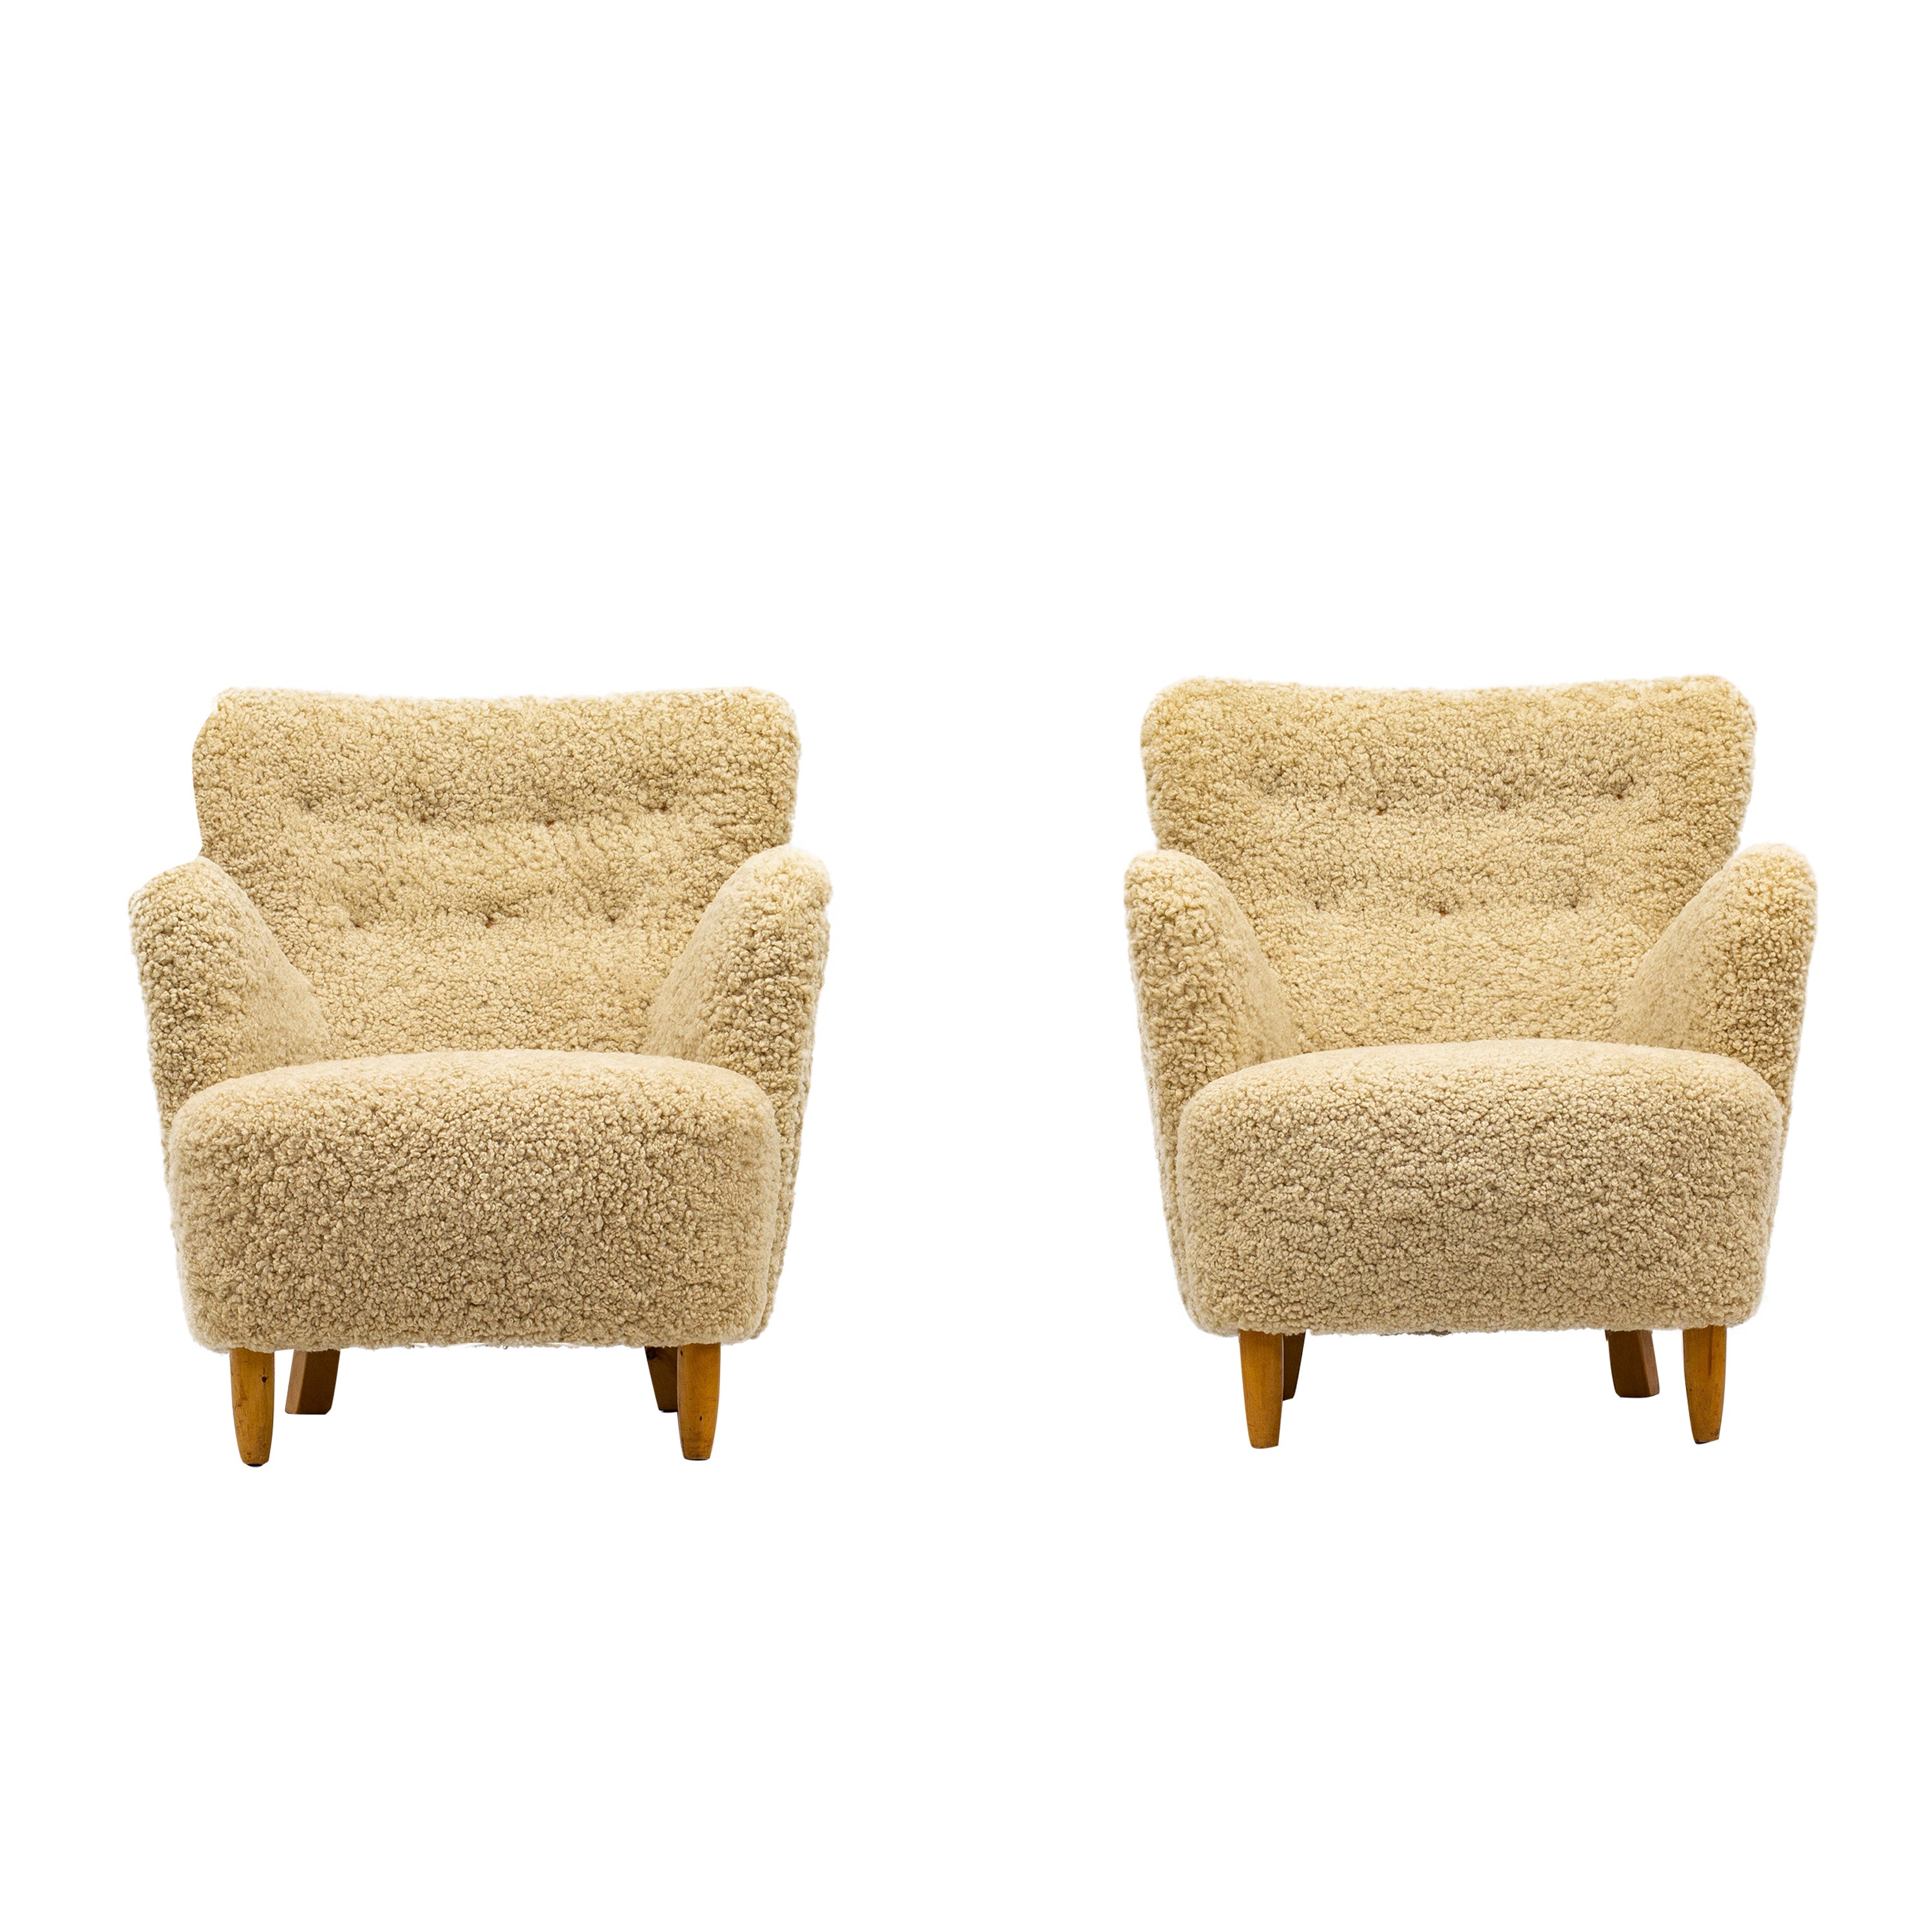 Pair of Organic Danish Modern Sheepskin Lounge Chairs, 1940s